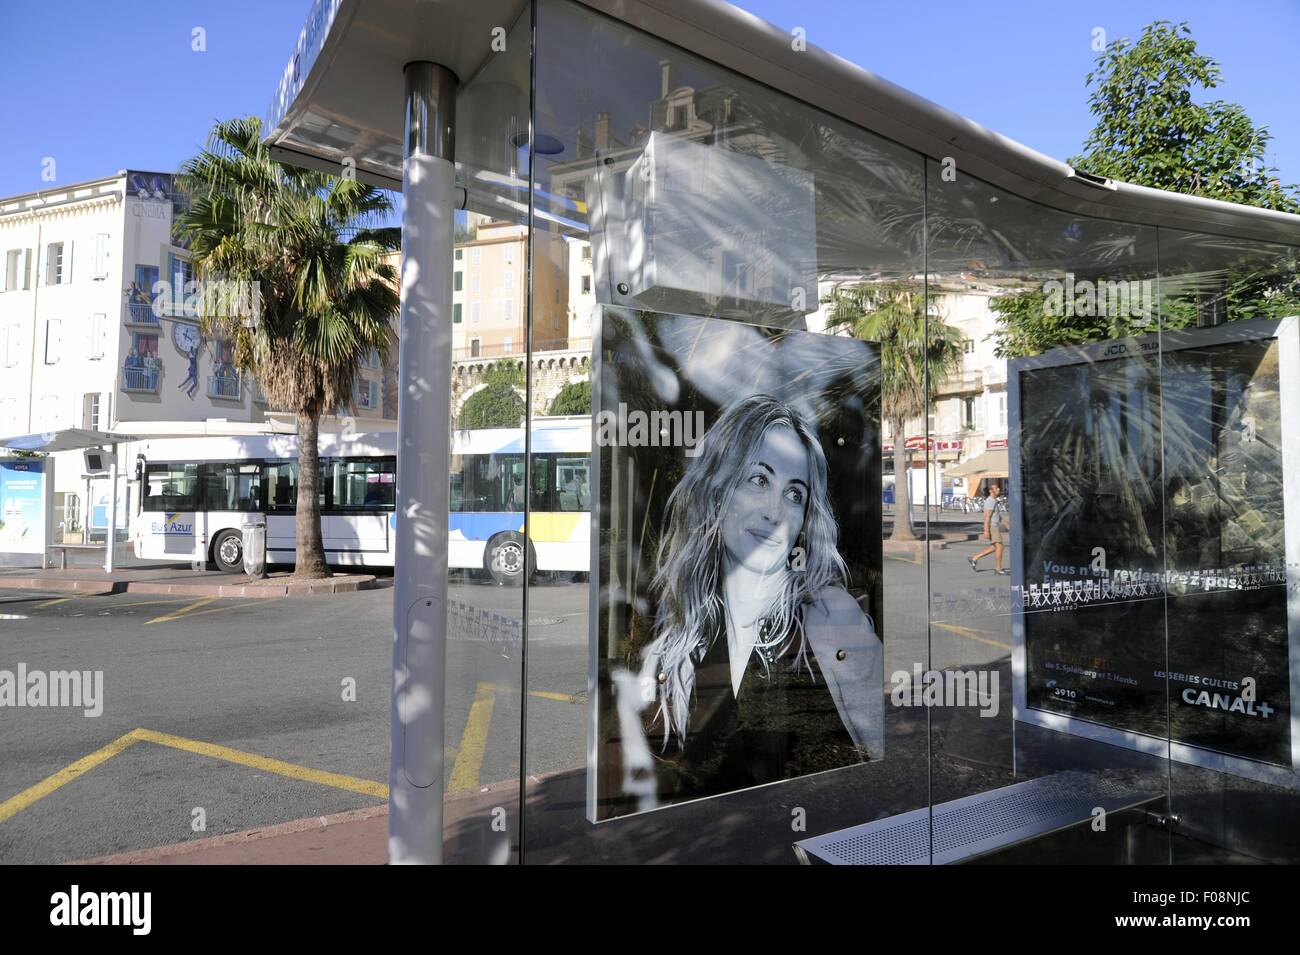 La France, d'Azur, Cannes : arrêt de bus avec des portraits d'acteurs célèbres Banque D'Images